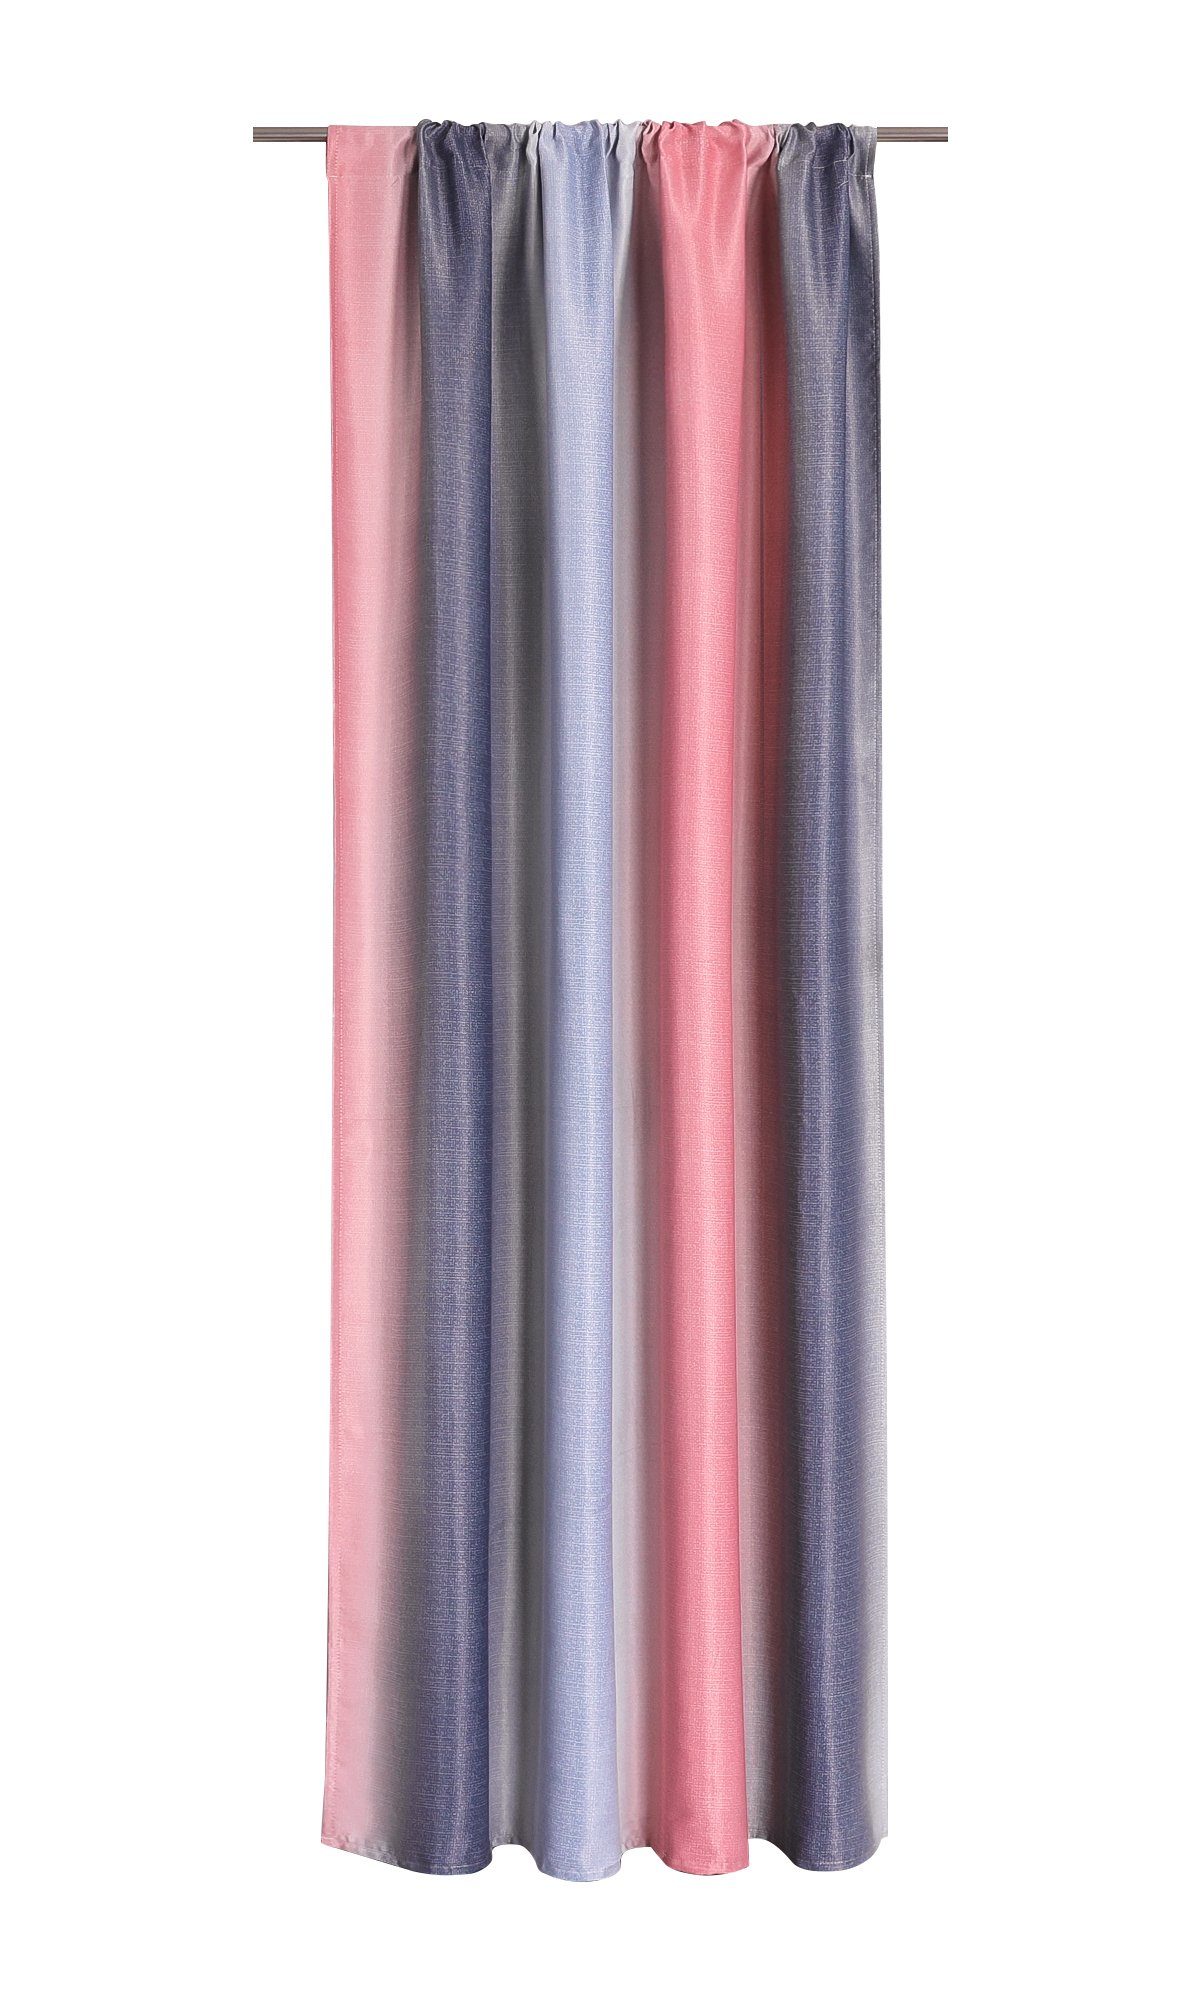 blickdicht, St), pink-grau Vorhang, (1 Stangendurchzug Farbelauf Joyswahl,